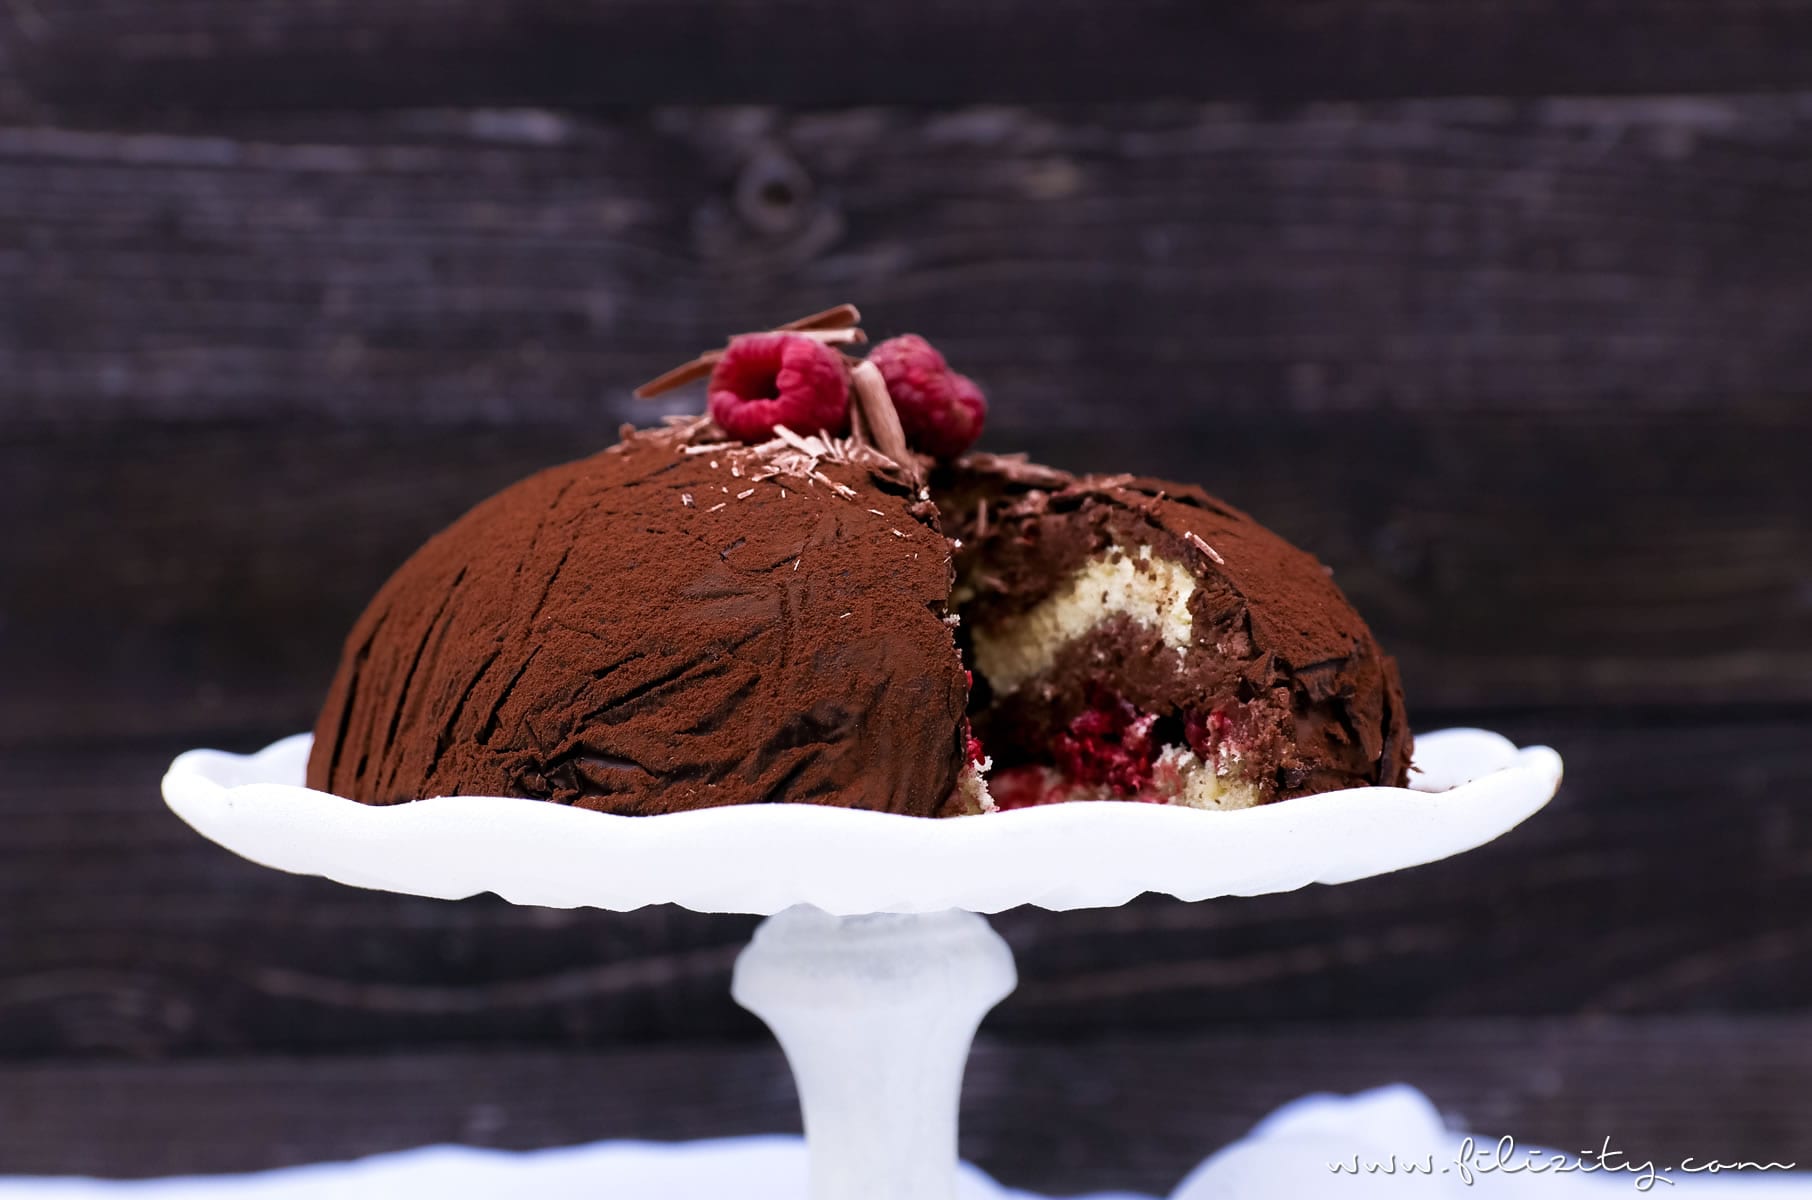 Für Schoko-Junkies: Himbeer-Trüffel-Torte | Perfektes Dessert für besondere Anlässe wie Valentinstag oder Muttertag | Filizity.com | Food-Blog aus dem Rheinland #schokolade #chocolate #torte